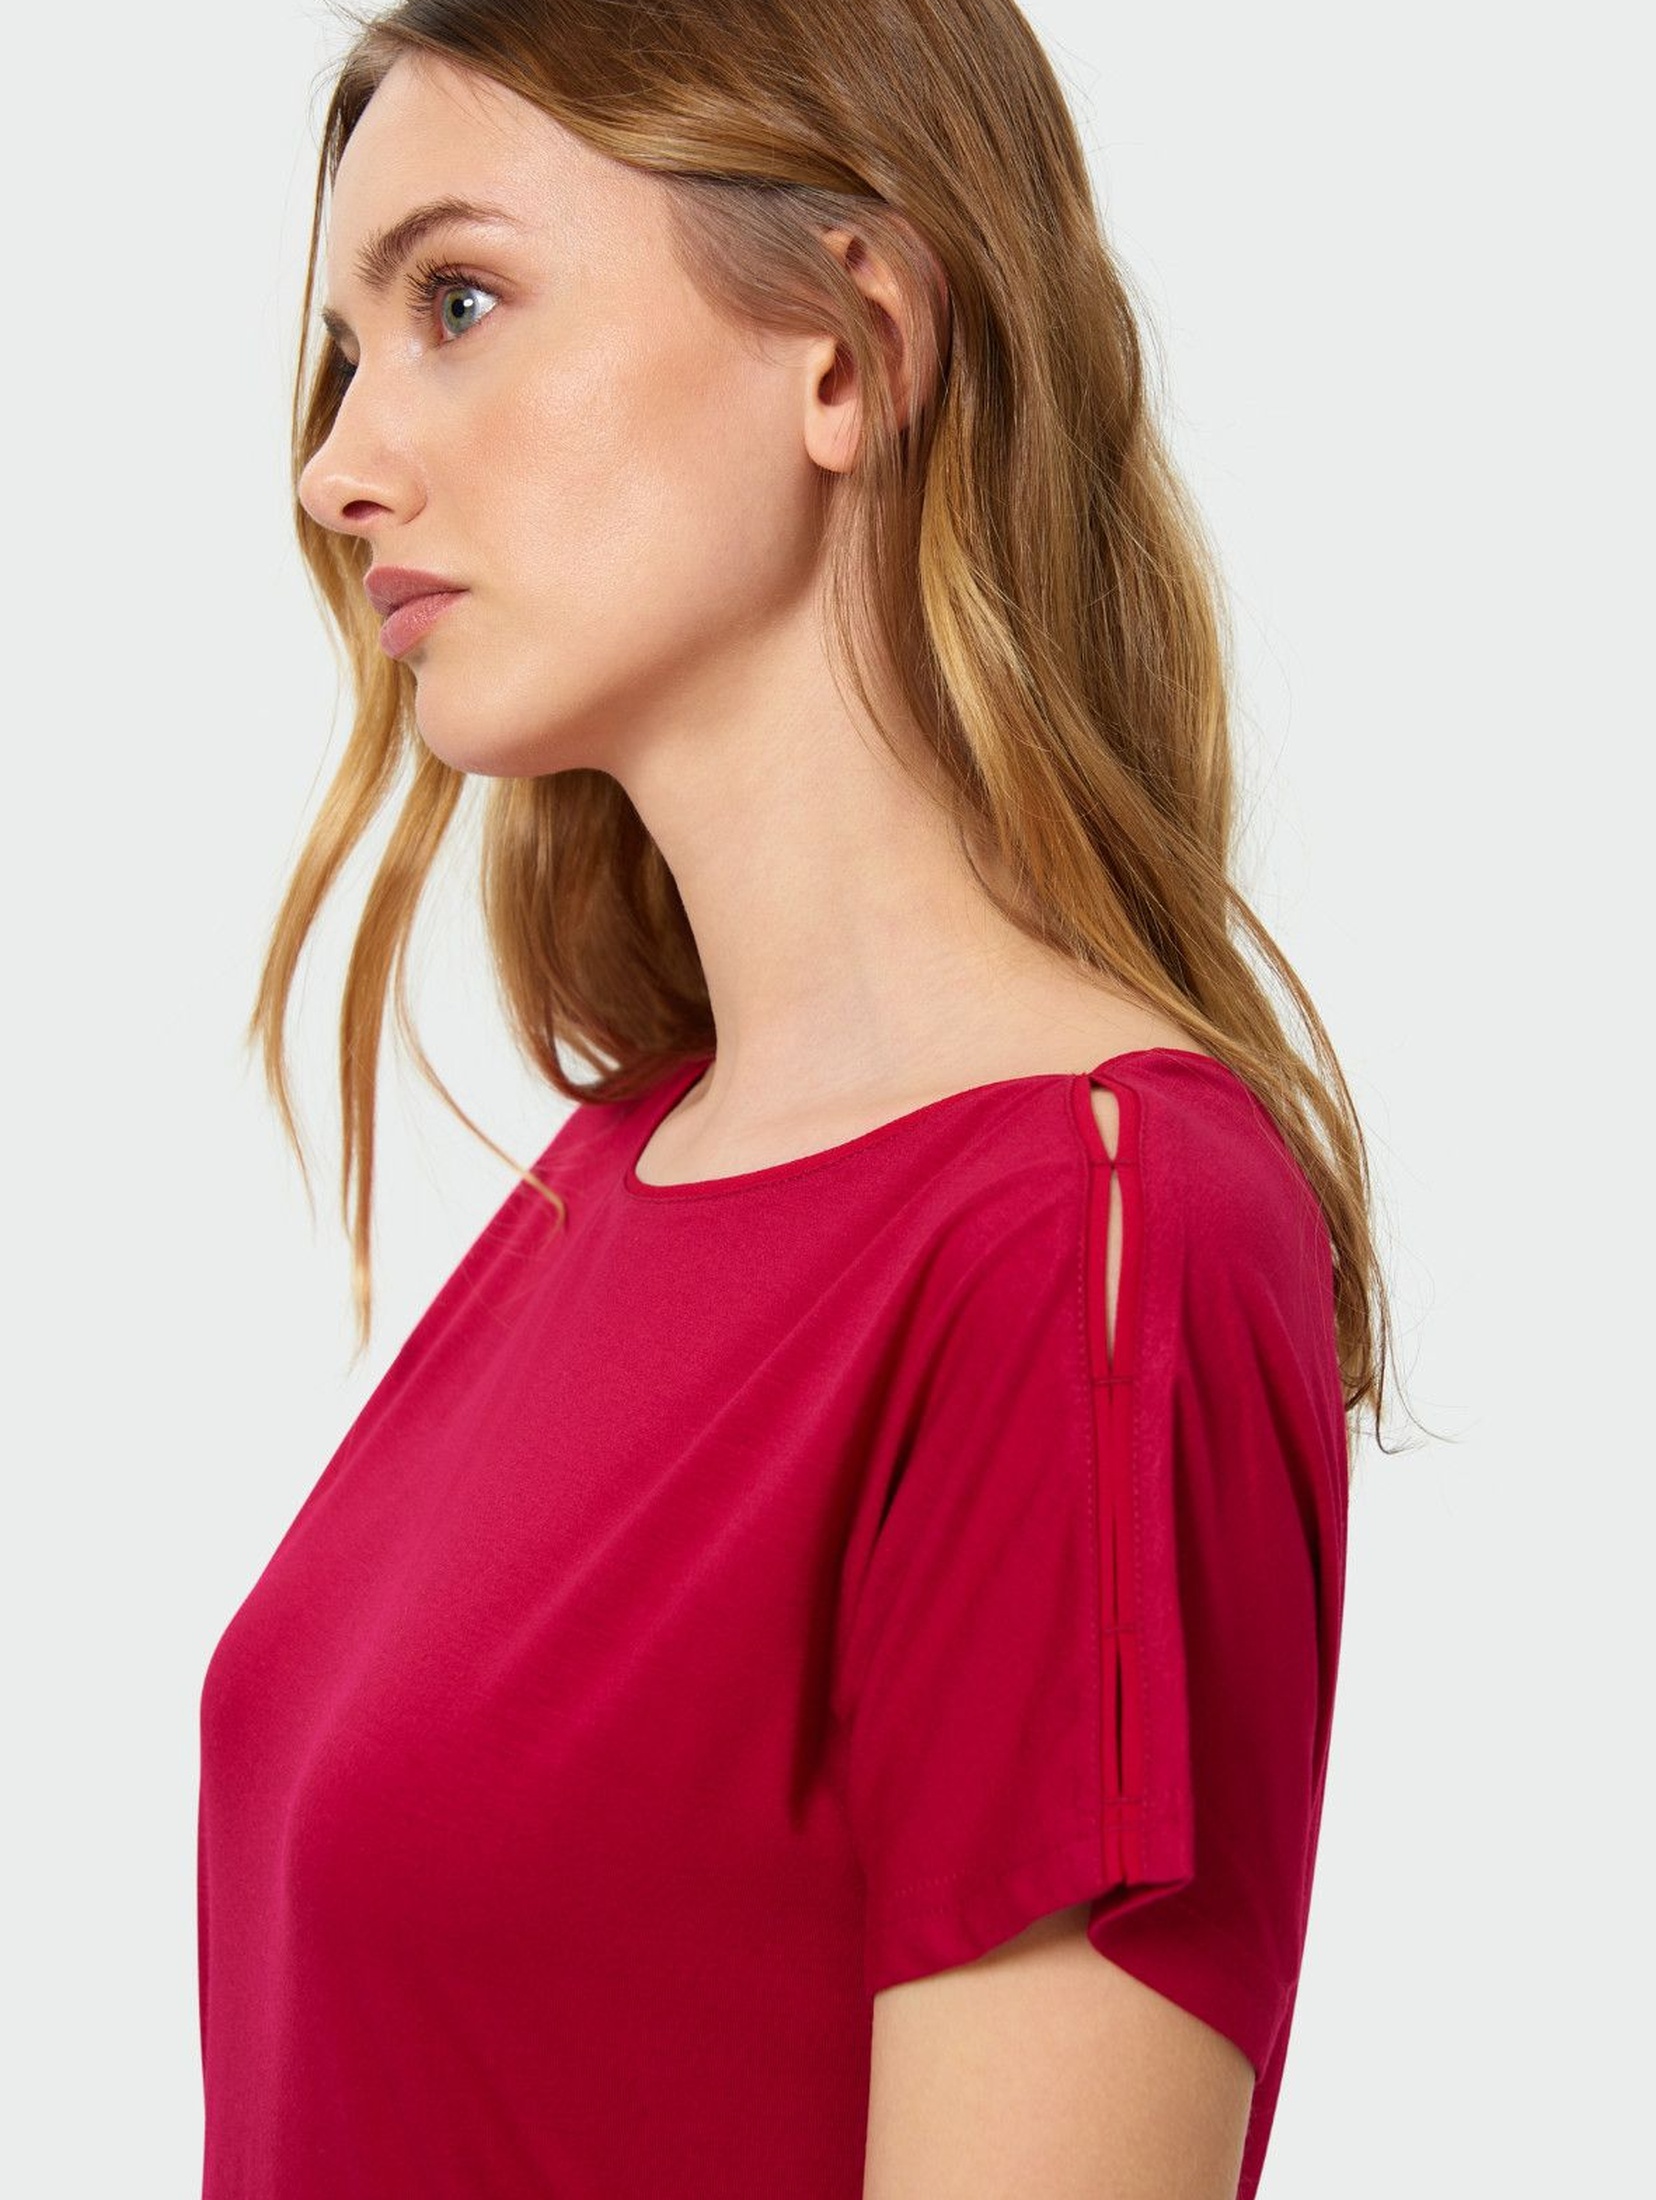 Klasyczny czerwony top z satynową lamówką przy dekolcie- ubrania dla kobiet